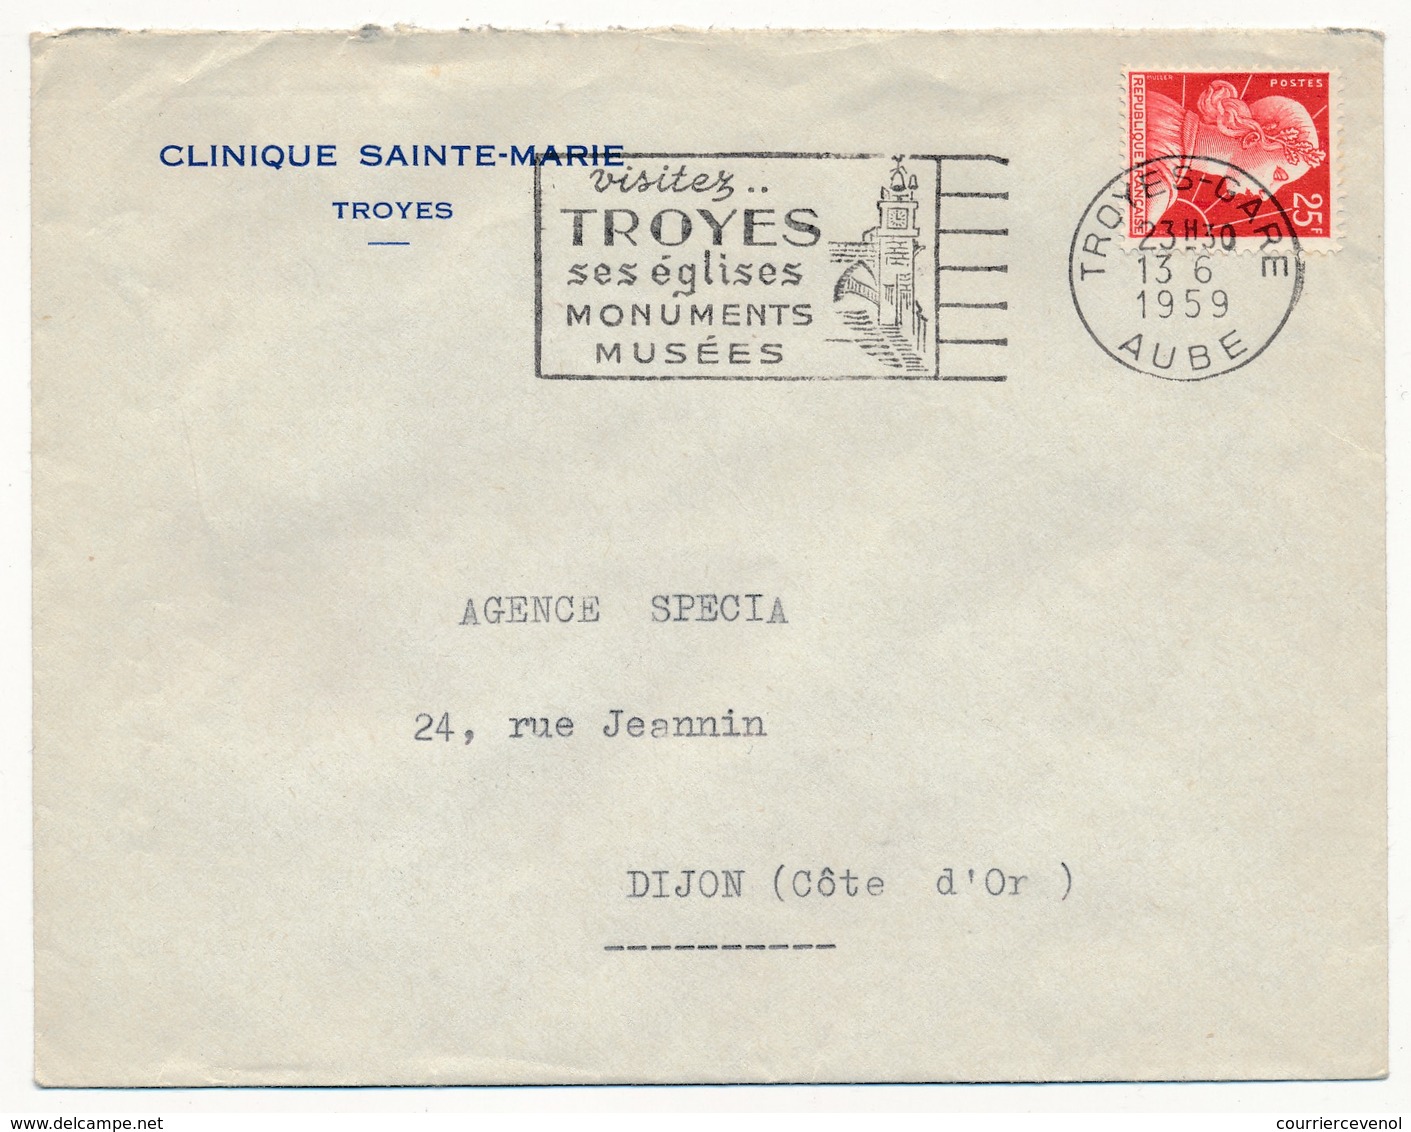 Enveloppe En-tête - Clinique Sainte Marie - TROYES (Aube) - OMEC Visitez Troyes 1959 - Advertising